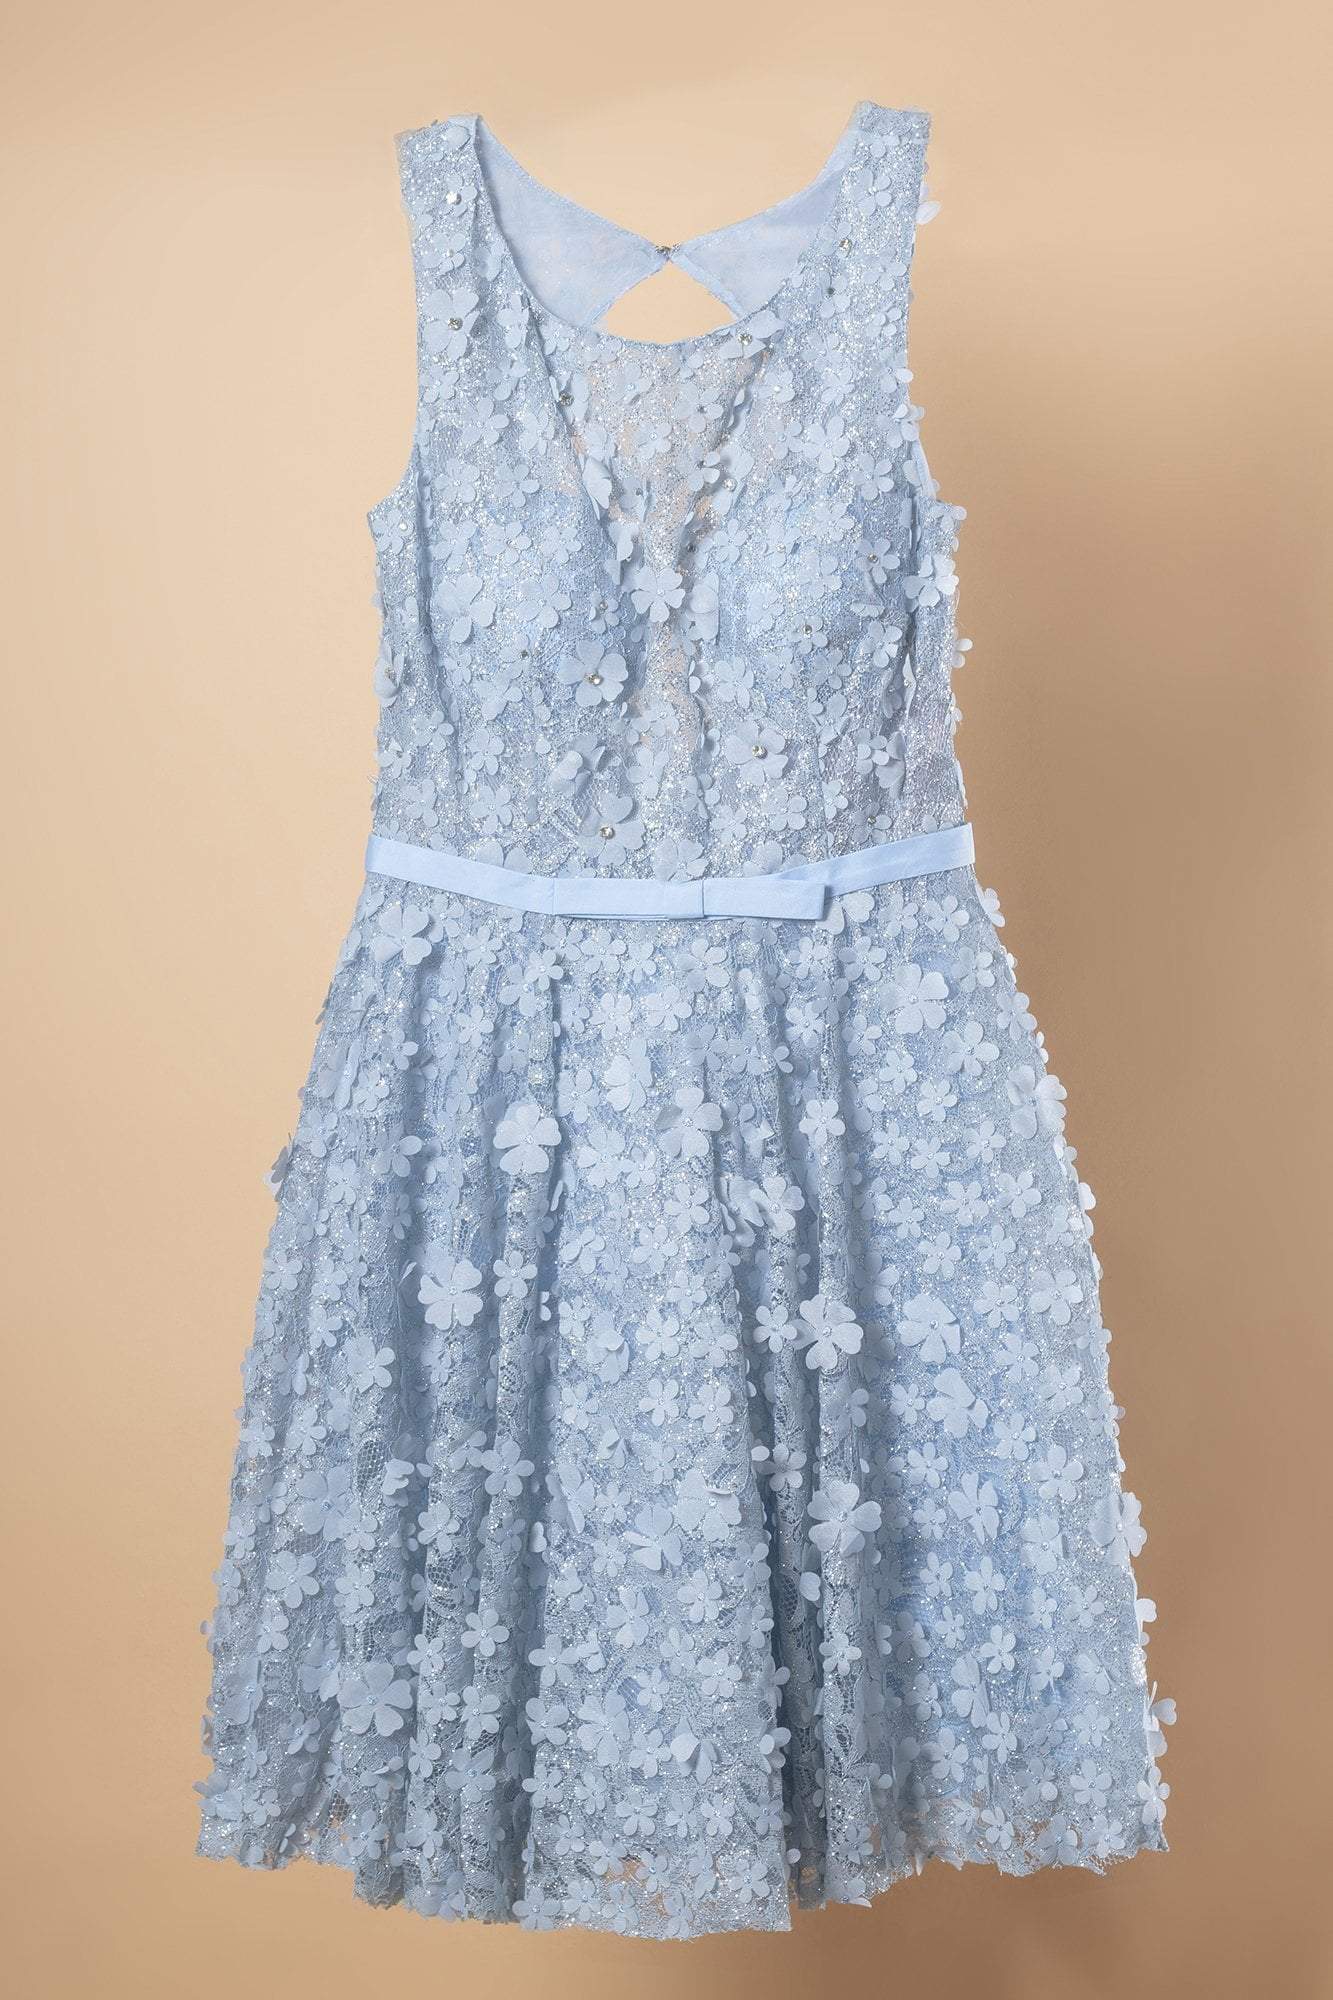 Elizabeth K - GS1604 Dimensional Floral Appliqued Lace Cocktail Dress Special Occasion Dress XS / L/Blue